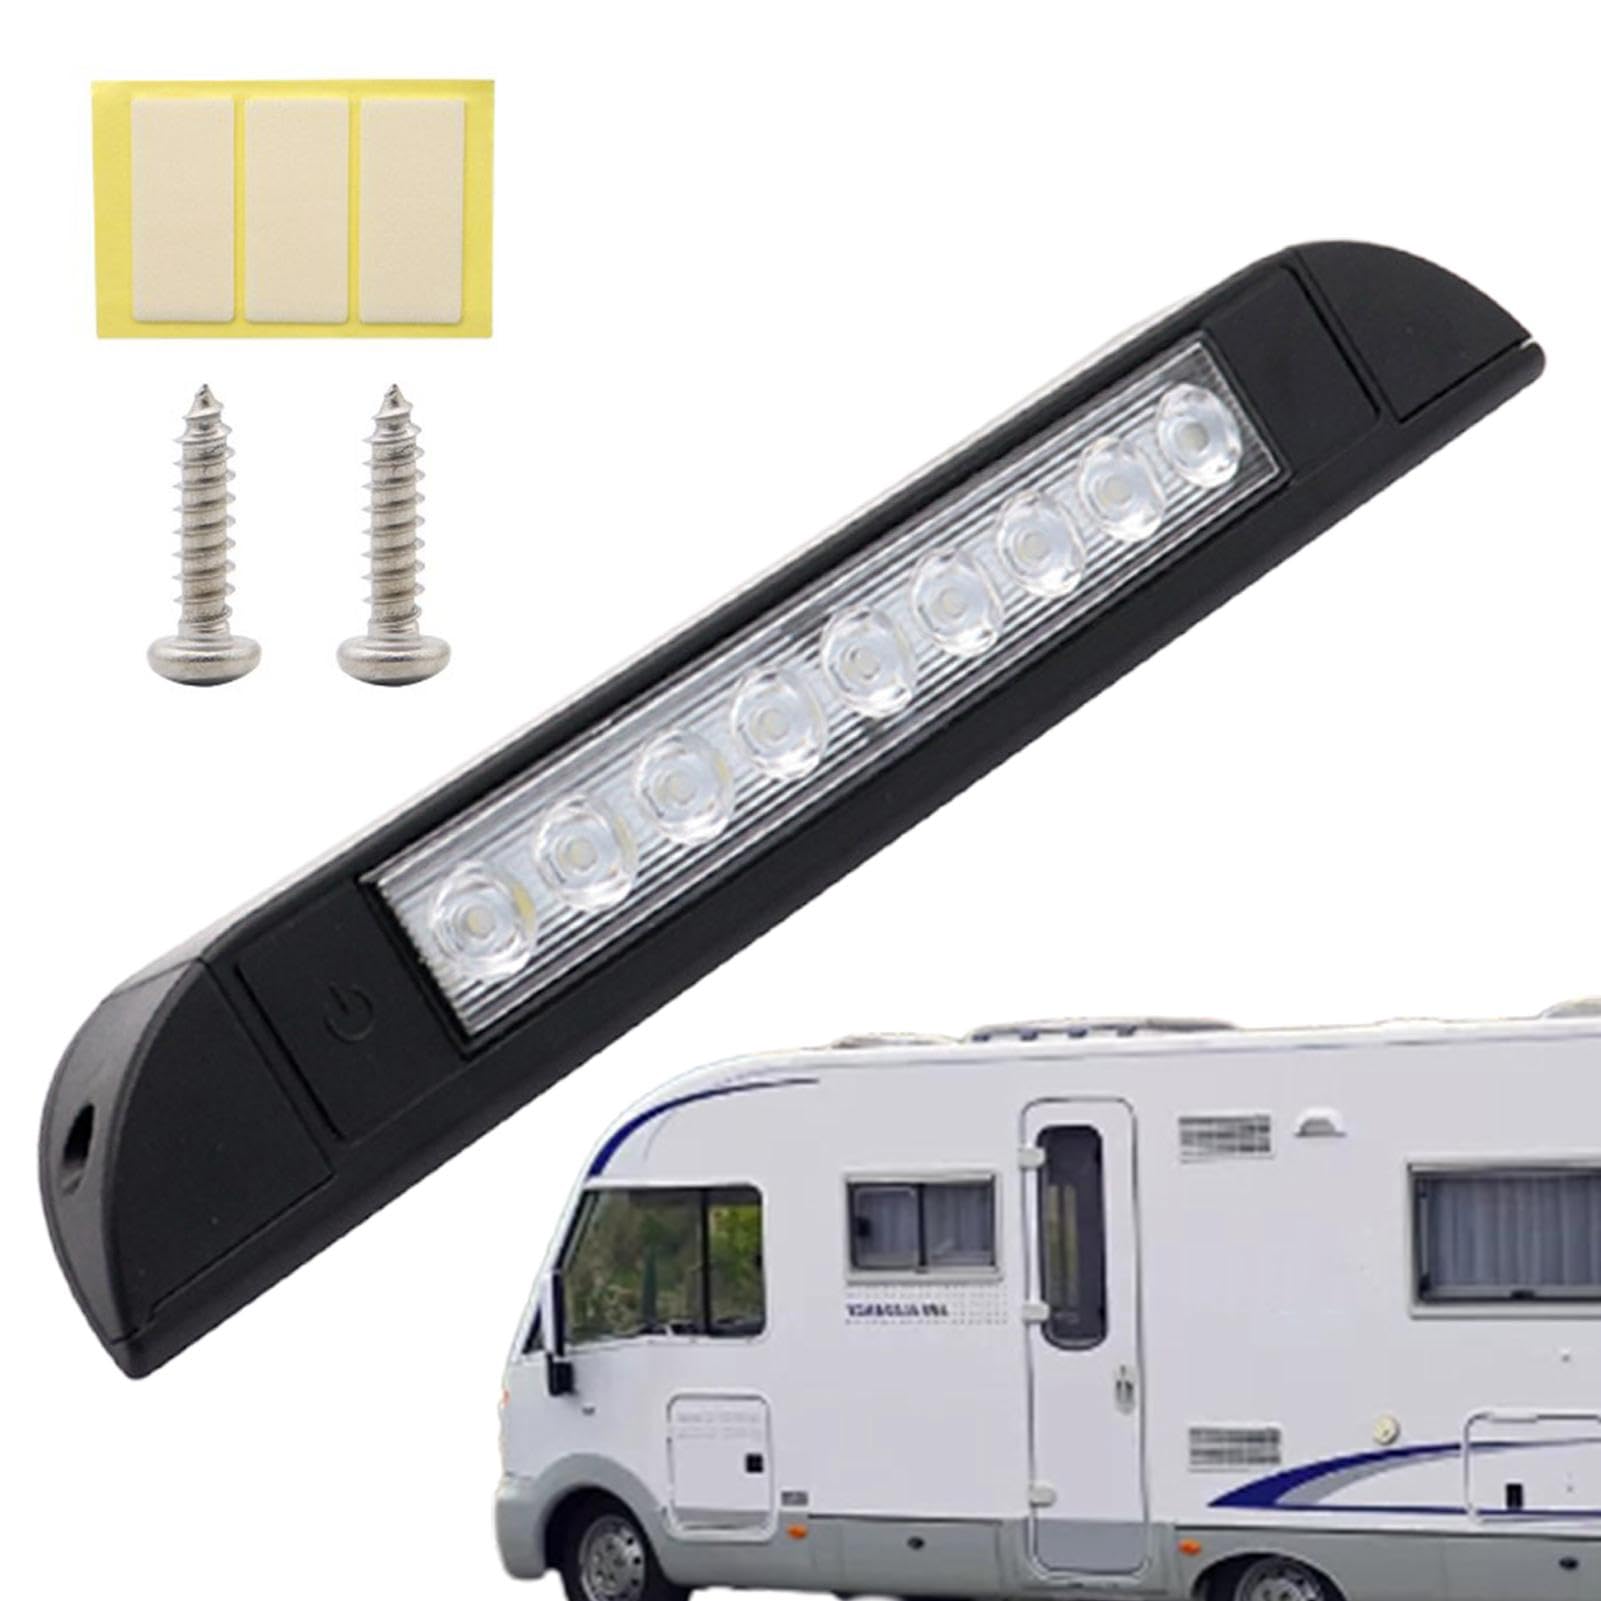 Auto-Innenlichtleiste, LED-Lichtleiste für Yacht - 12V Auto-Modifikation LED-Lichtleiste - Touch Control Light Bar 9 LEDs Fahrzeug-Außenbeleuchtung für LKWs, Anhänger, Wohnwagen von ulapithi